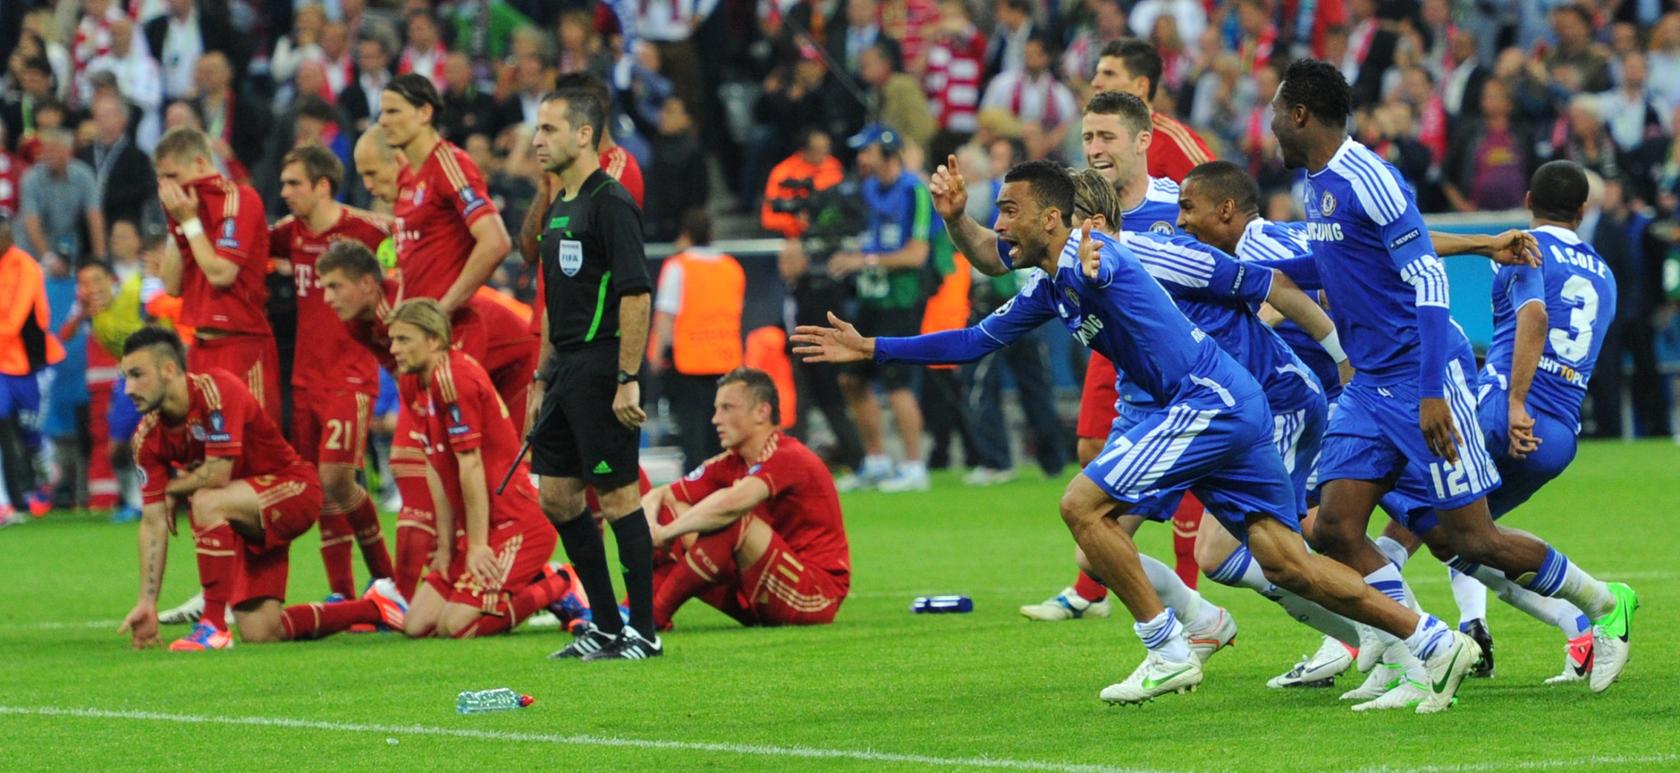 Der FC Chelsea bejubelt den entscheidenden Elfmeter von Didier Drogba, die Bayern-Spieler trauern.